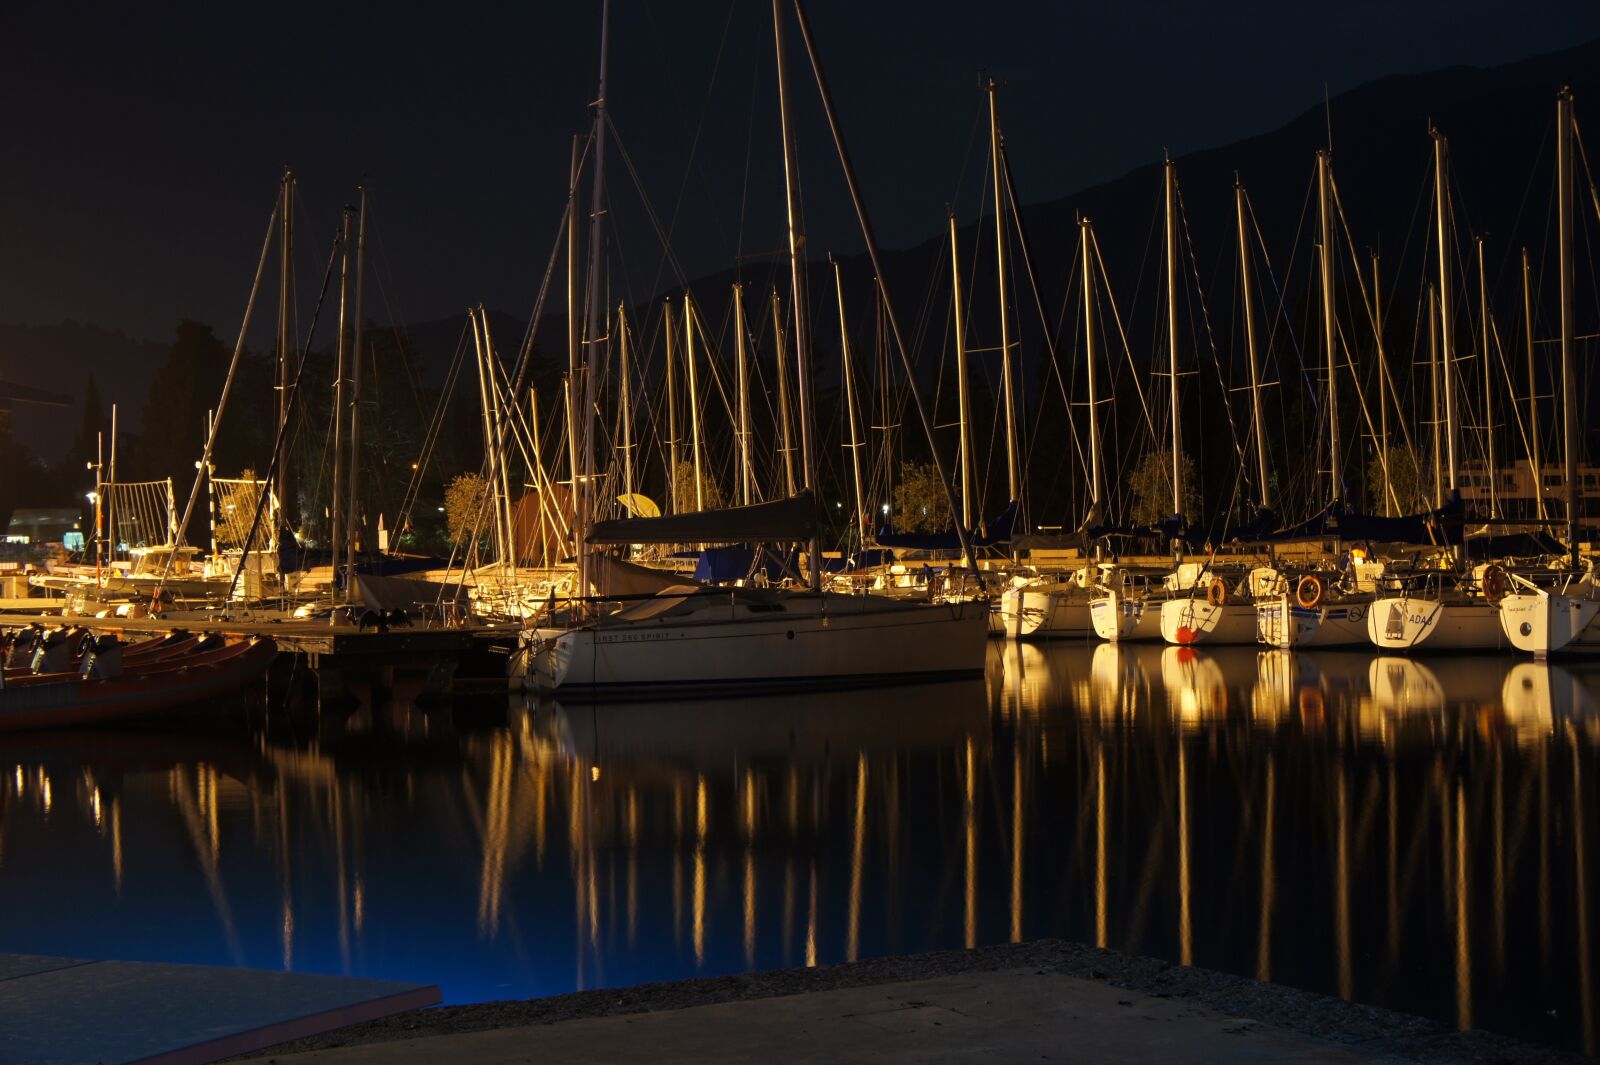 Sony Alpha NEX-5 sample photo. Harbor, night, sailboat photography